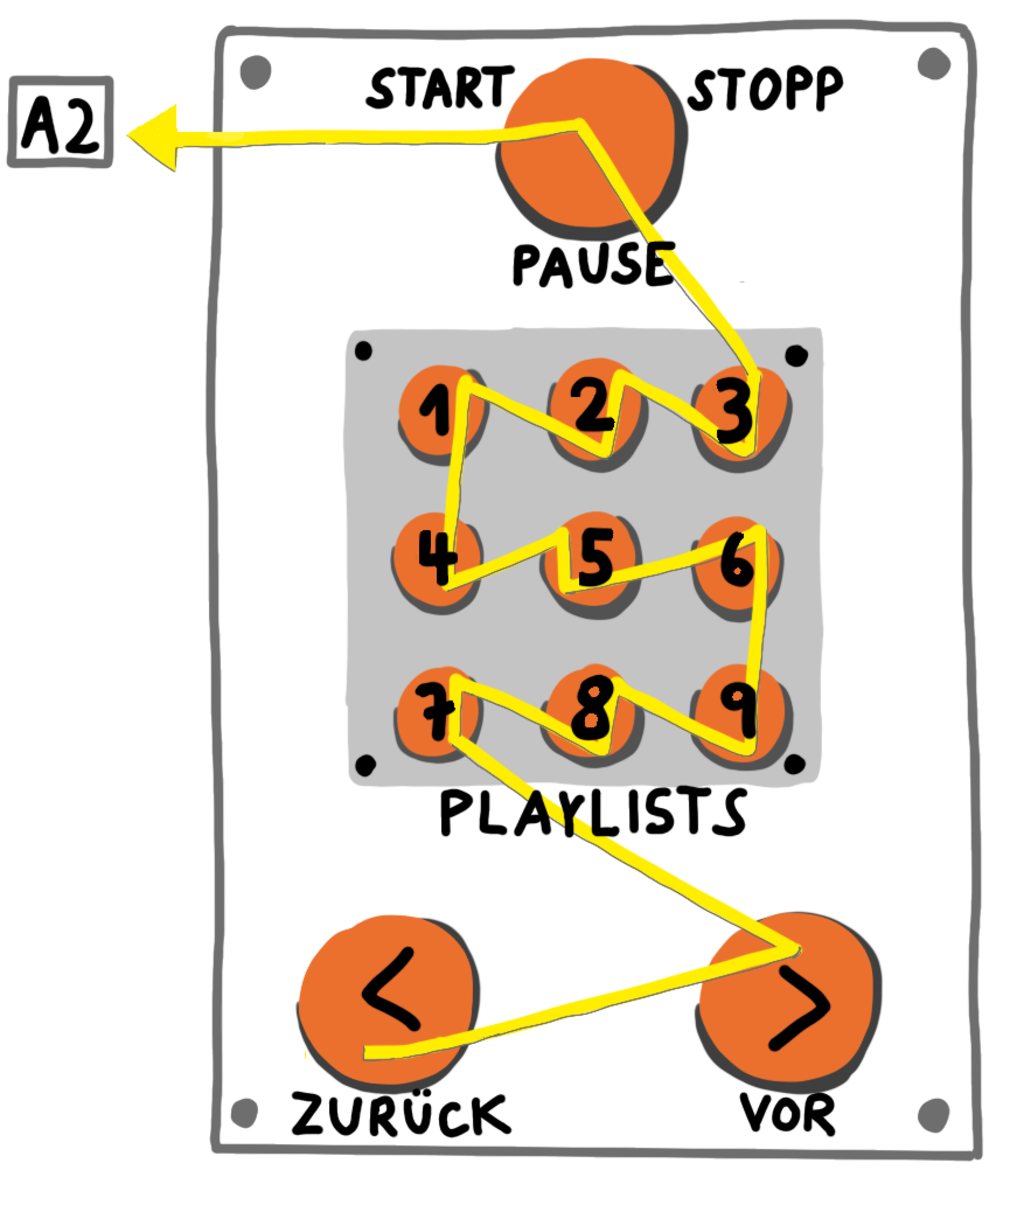 Button wiring schema